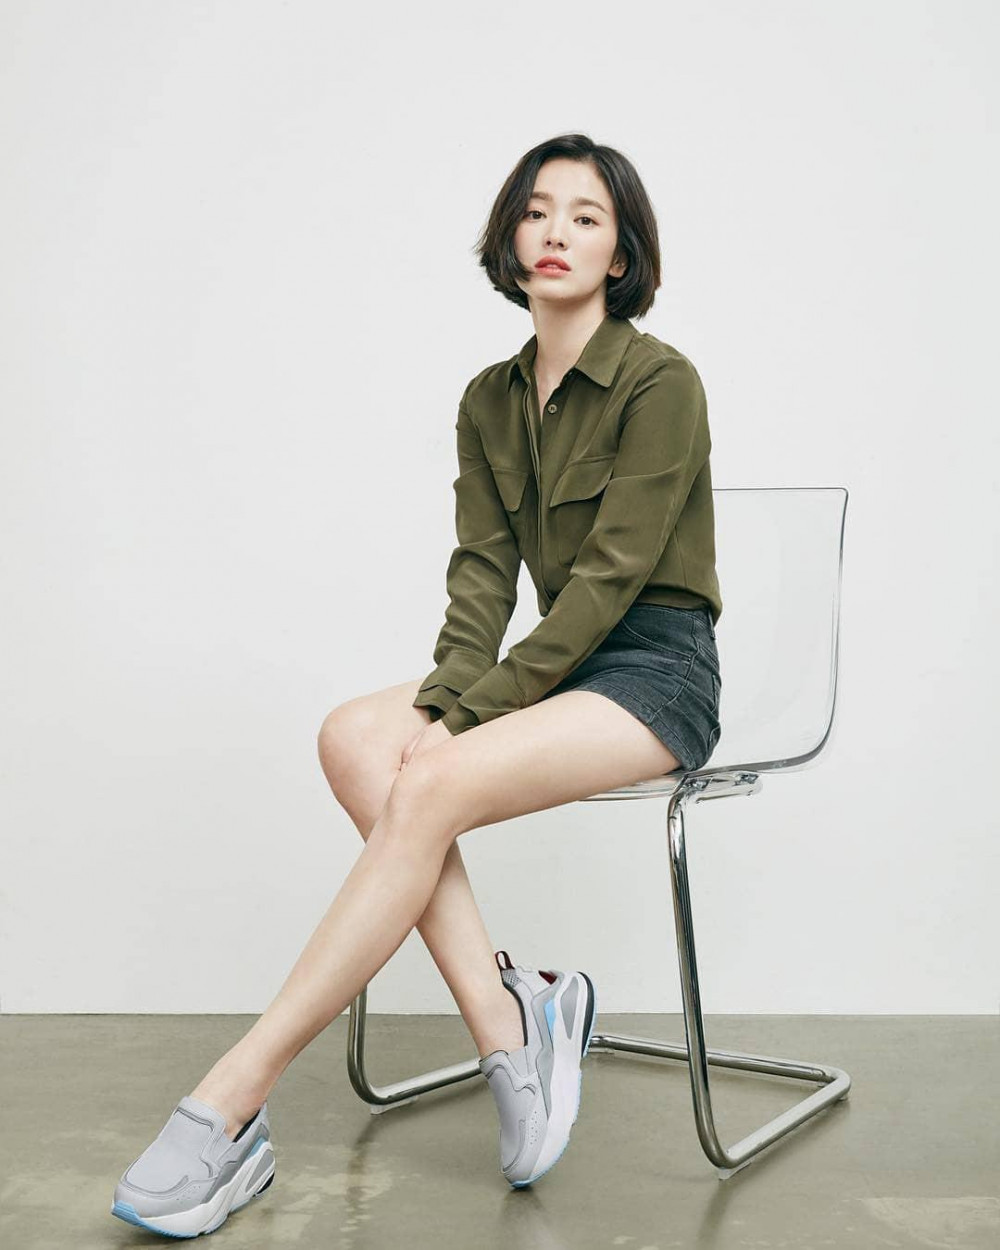 Song Hye Kyo thường chọn những bộ váy có chiều dài trên gối, có phom dáng chữ A xòe bồng vừa giúp tôn vòng eo lại “kéo dài” đôi chân.